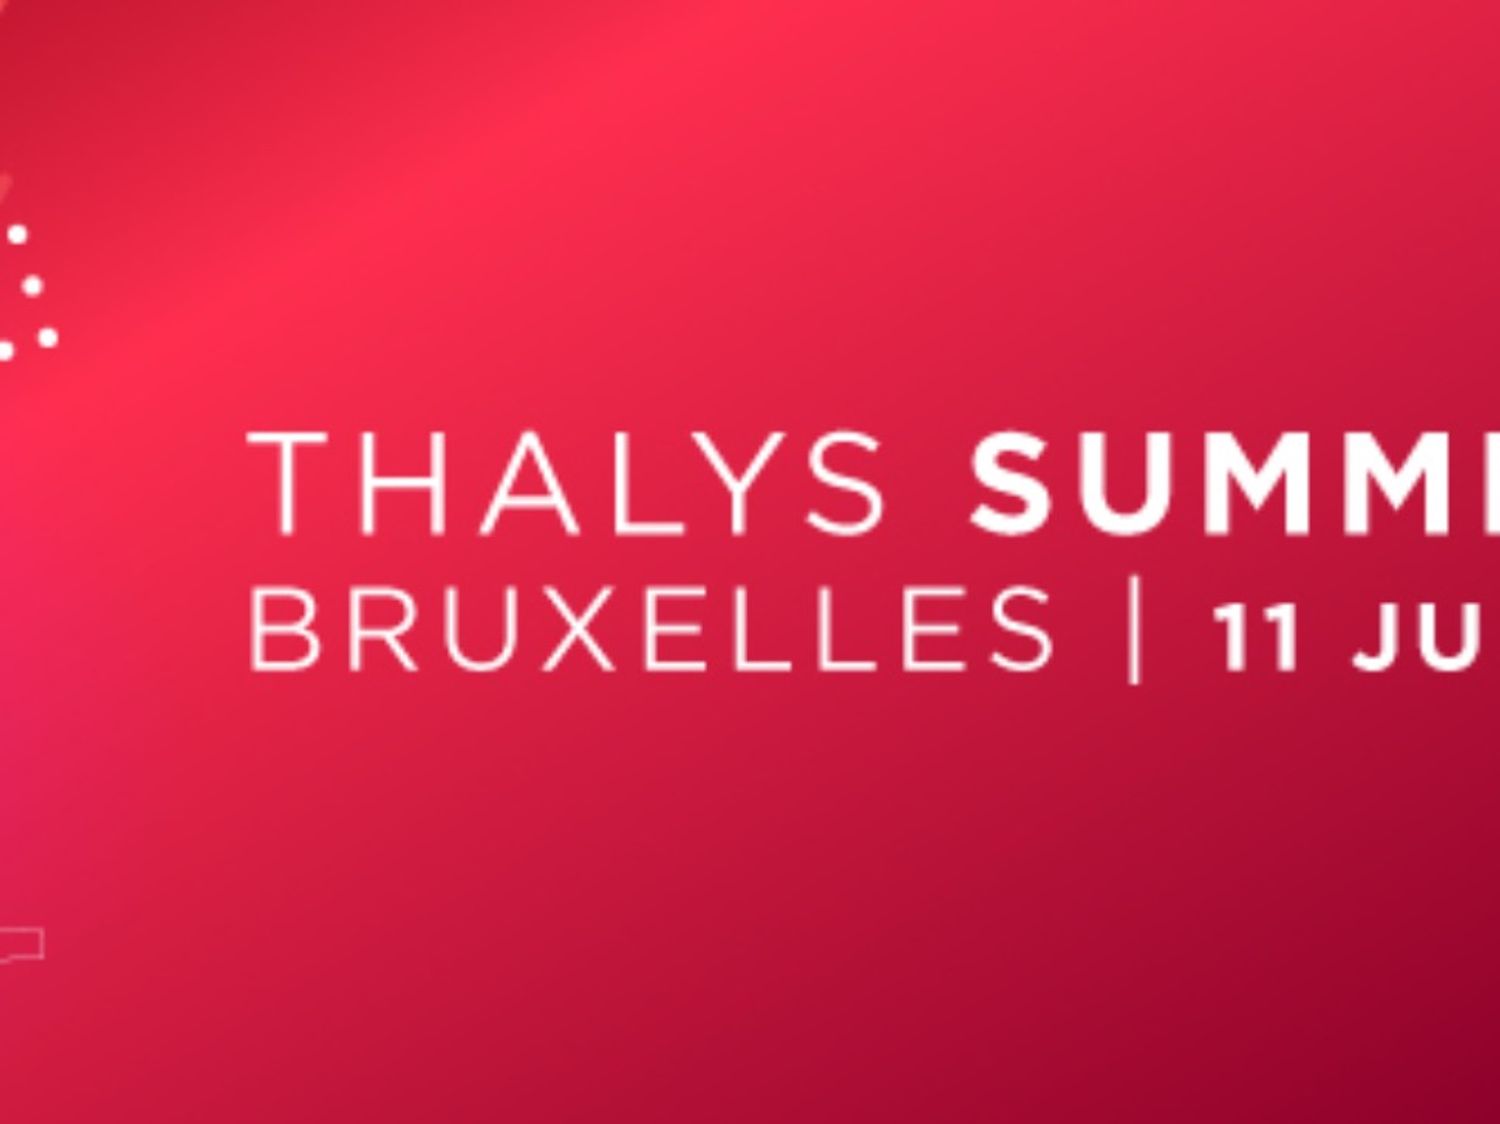 Gagne tes places pour le Thalys Summer Festival, le 11 juin à...